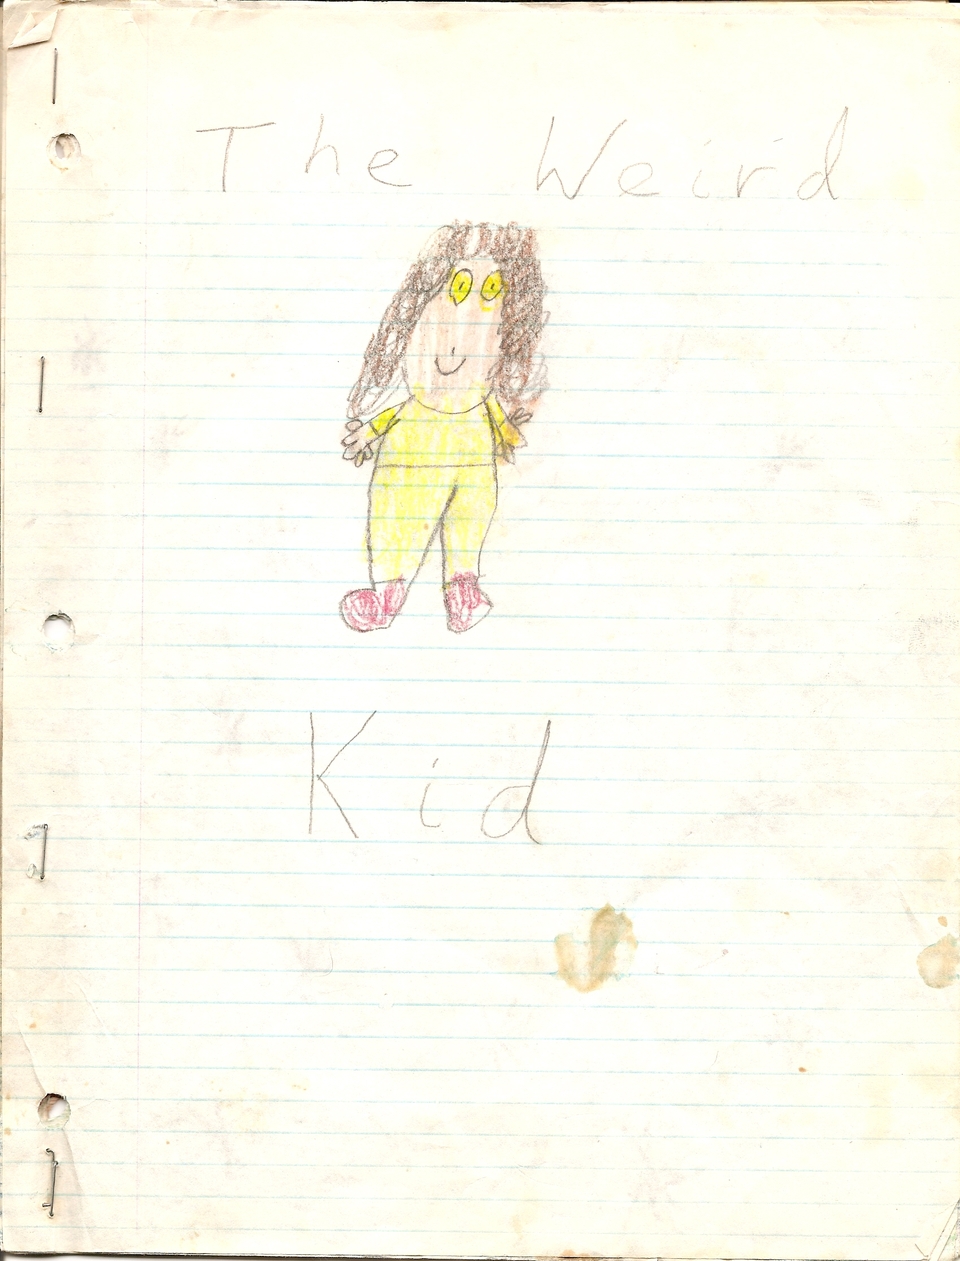 The Weird Kid original Page 1